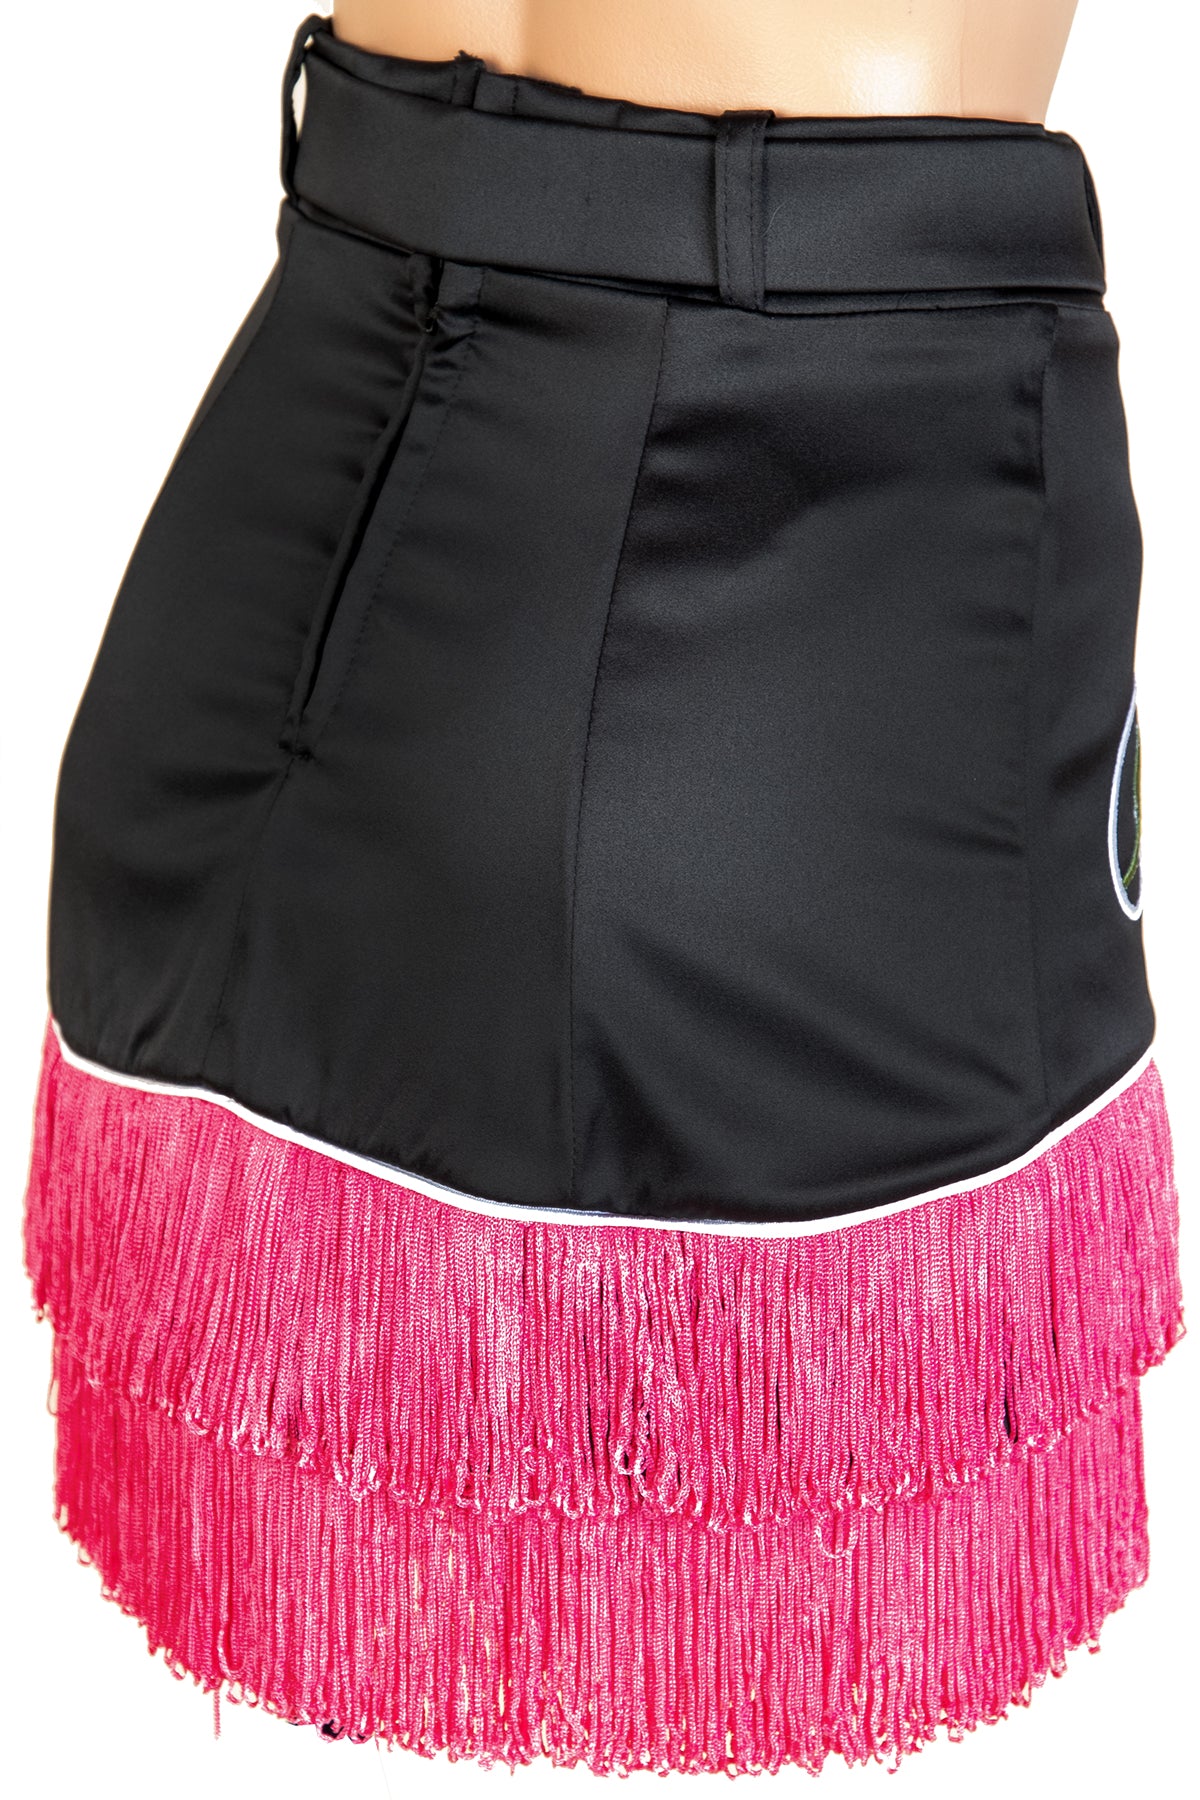 Desert Rose Cowgirl Plain Skirt & Belt